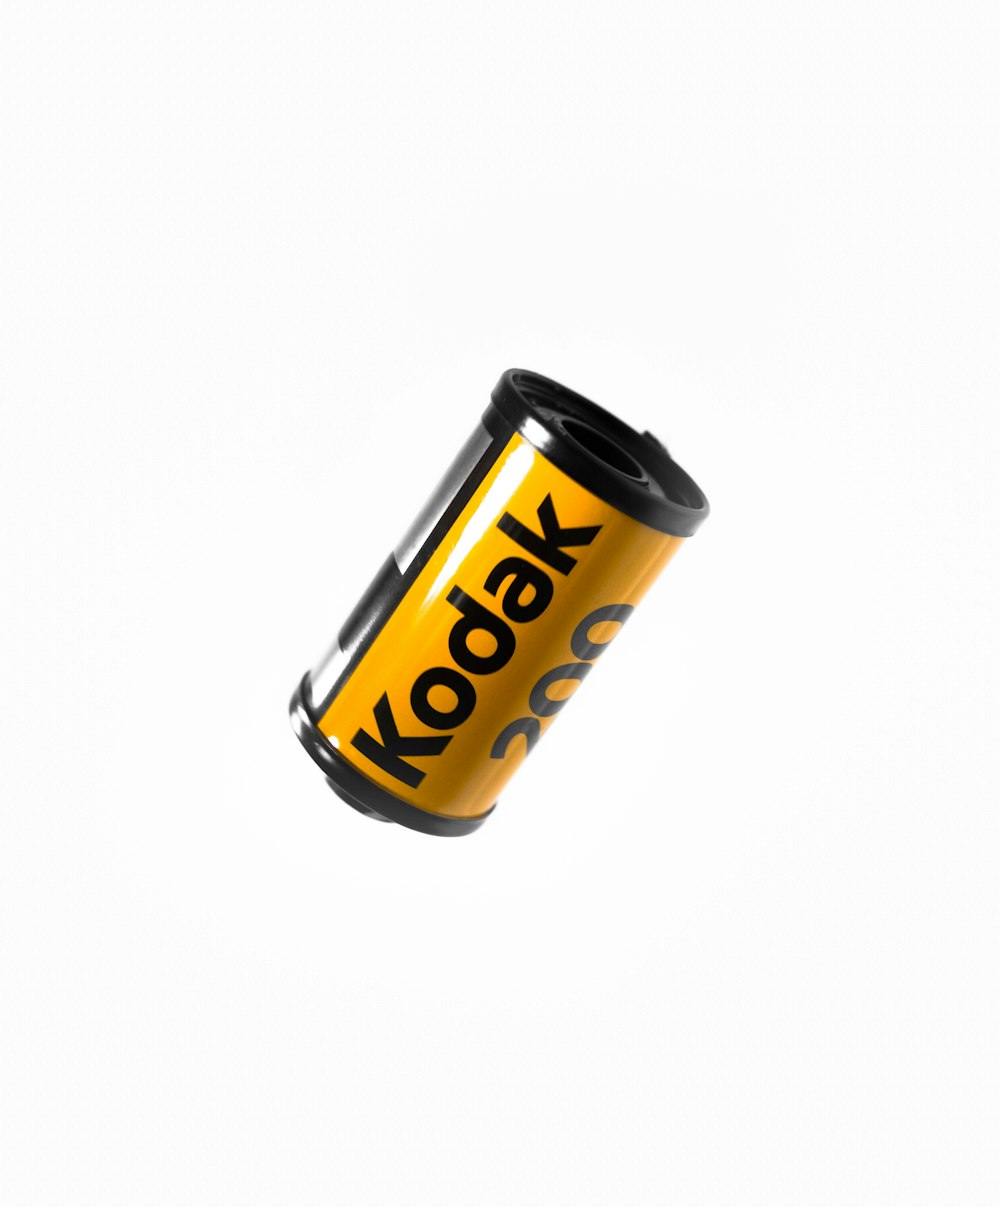 Película de cámara Kodak